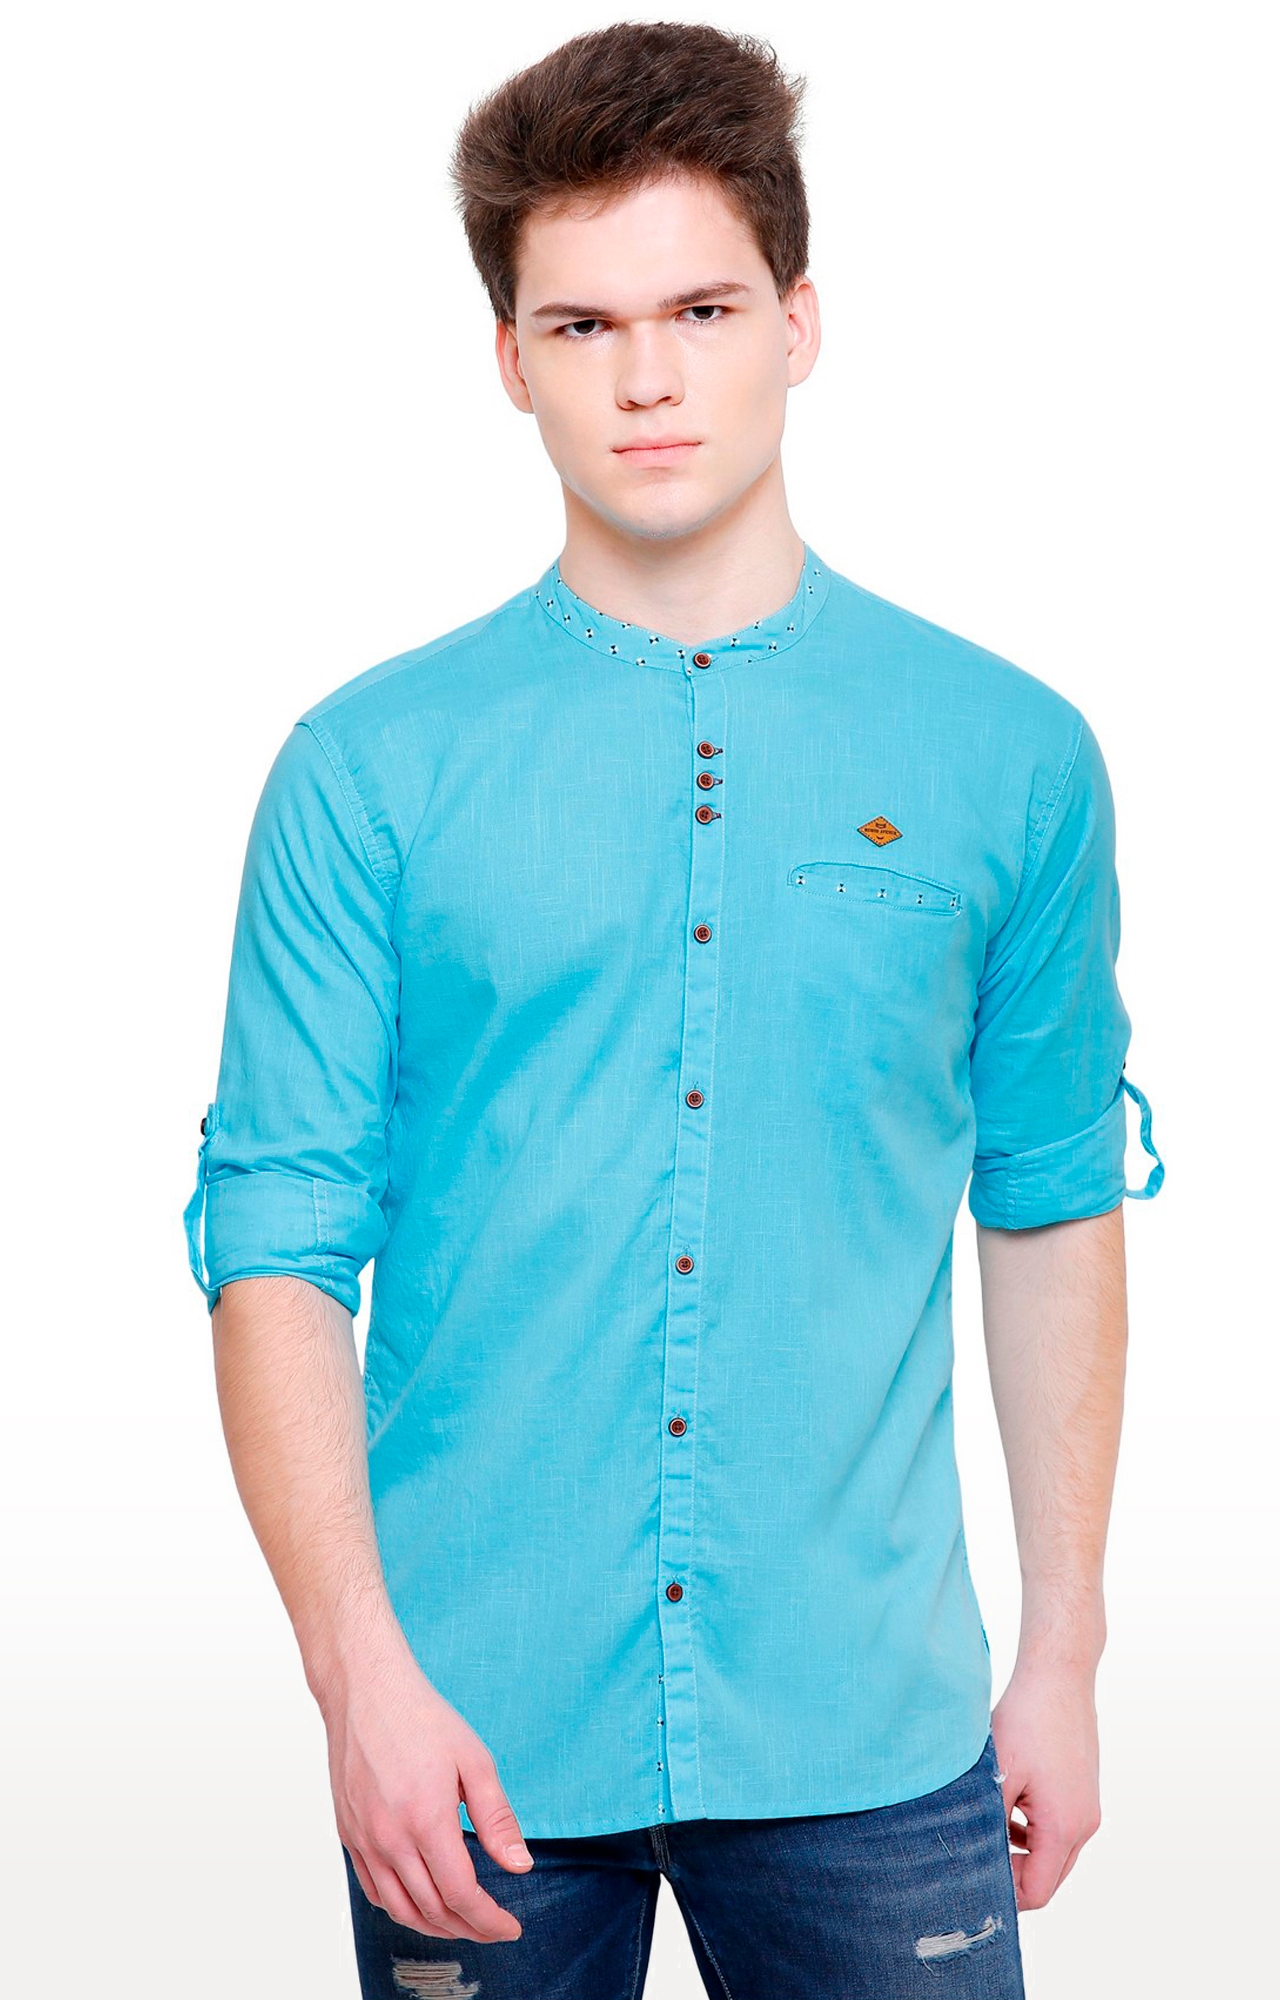 Kuons Avenue | Kuons Avenue Men's Turquoise Linen Cotton Shirt